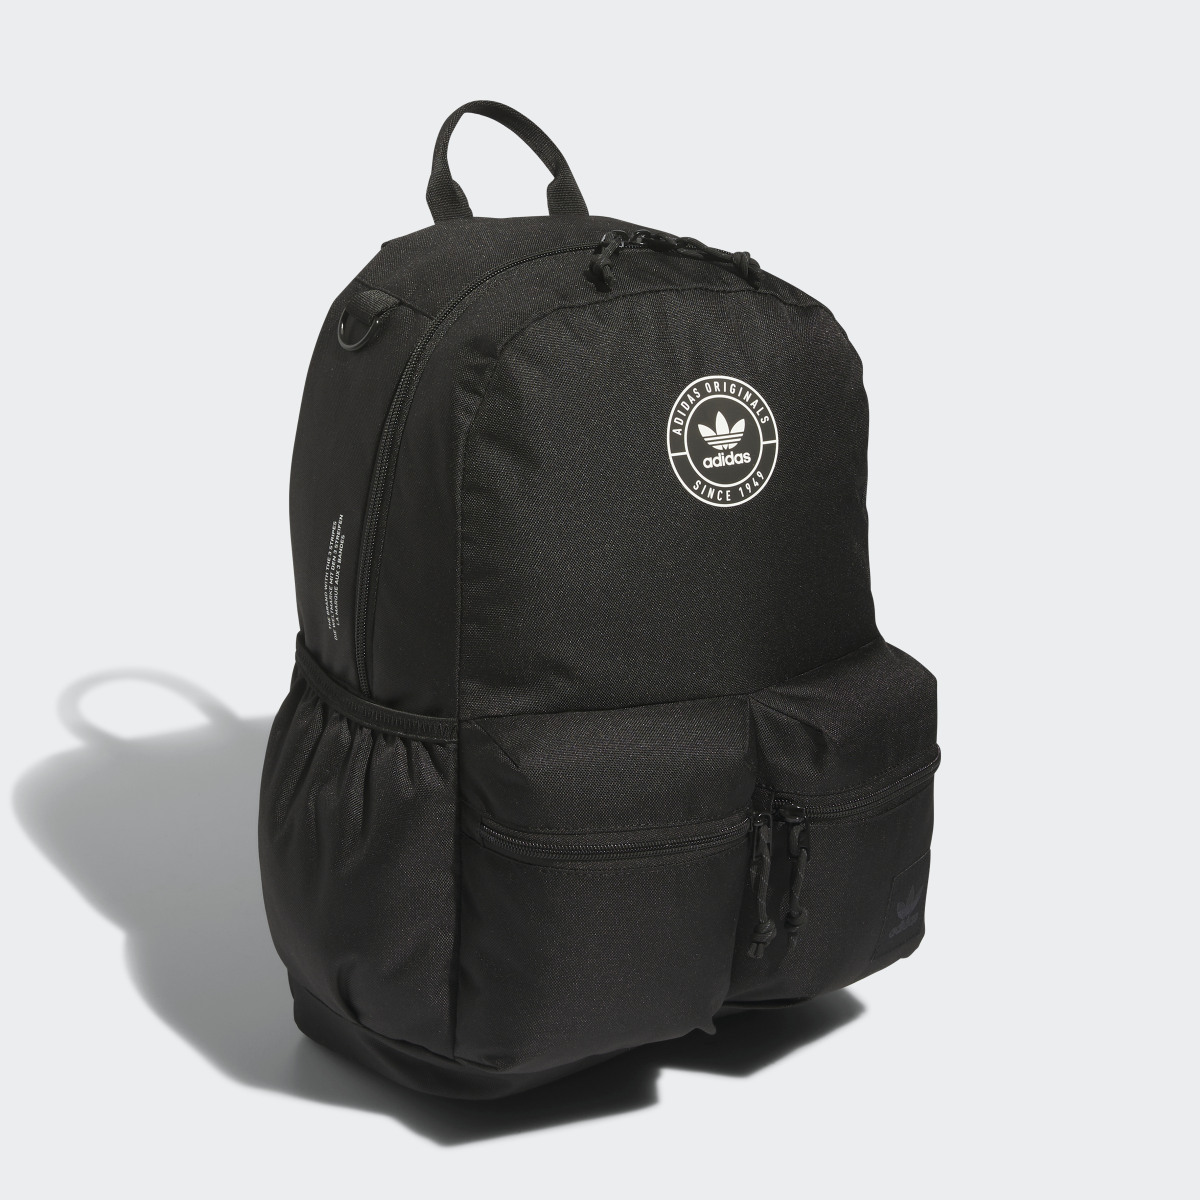 Adidas Trefoil 3.0 Backpack Dark Yellow - Originals Bags